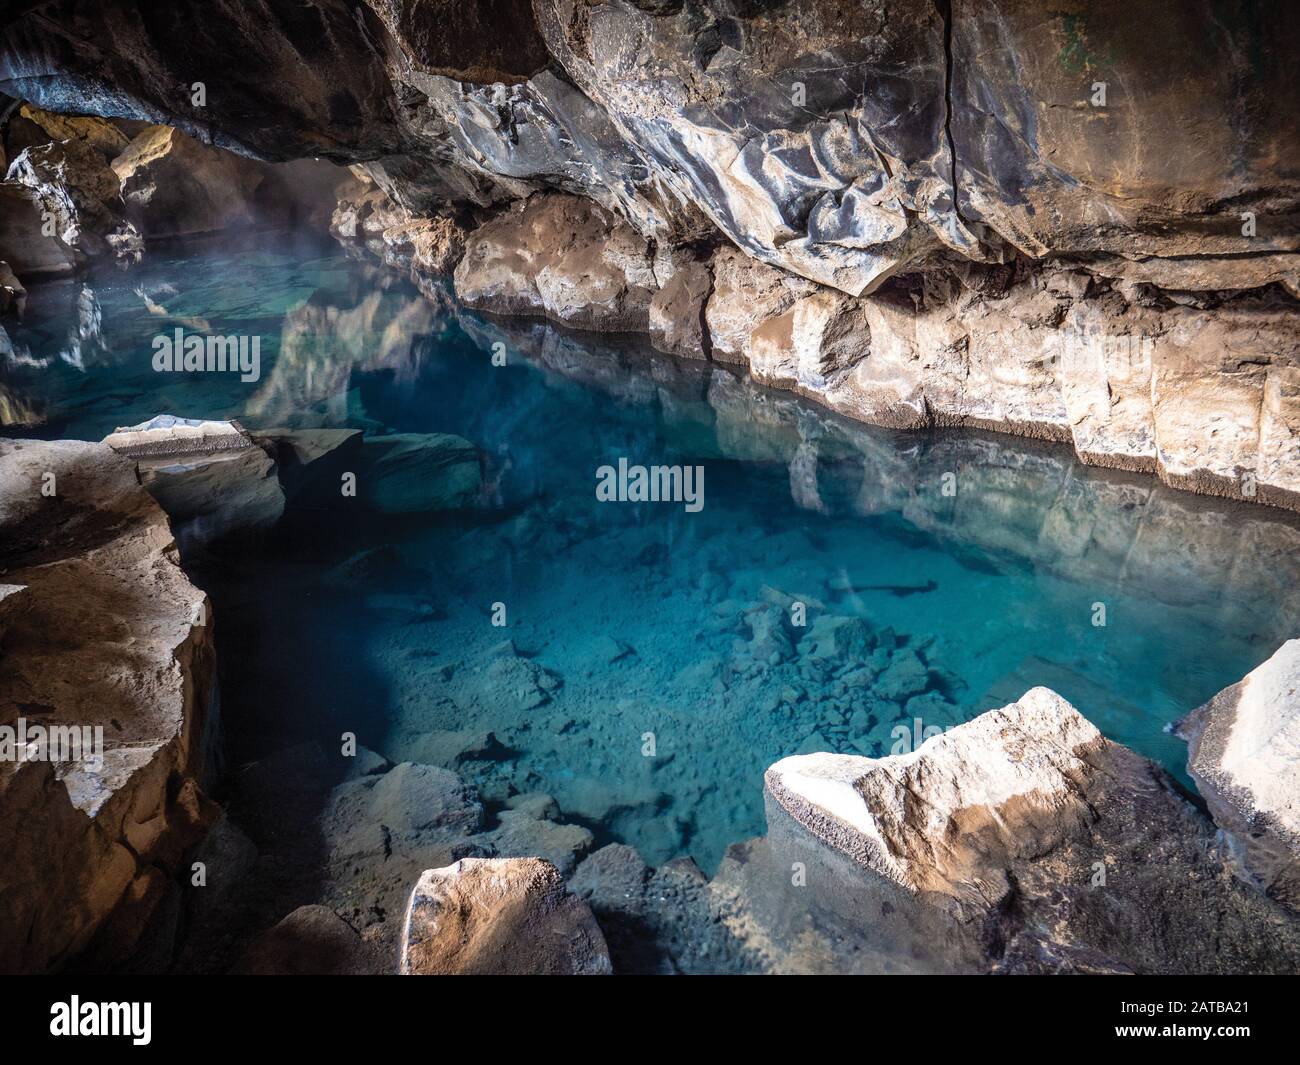 Die Grjótagjá Höhle Im Herzen Islands. Eine heiße Quelle mit spiegelglatter Wasseroberfläche. Ein romantischer Ort mit Toller Farbkomposition. Foto de stock